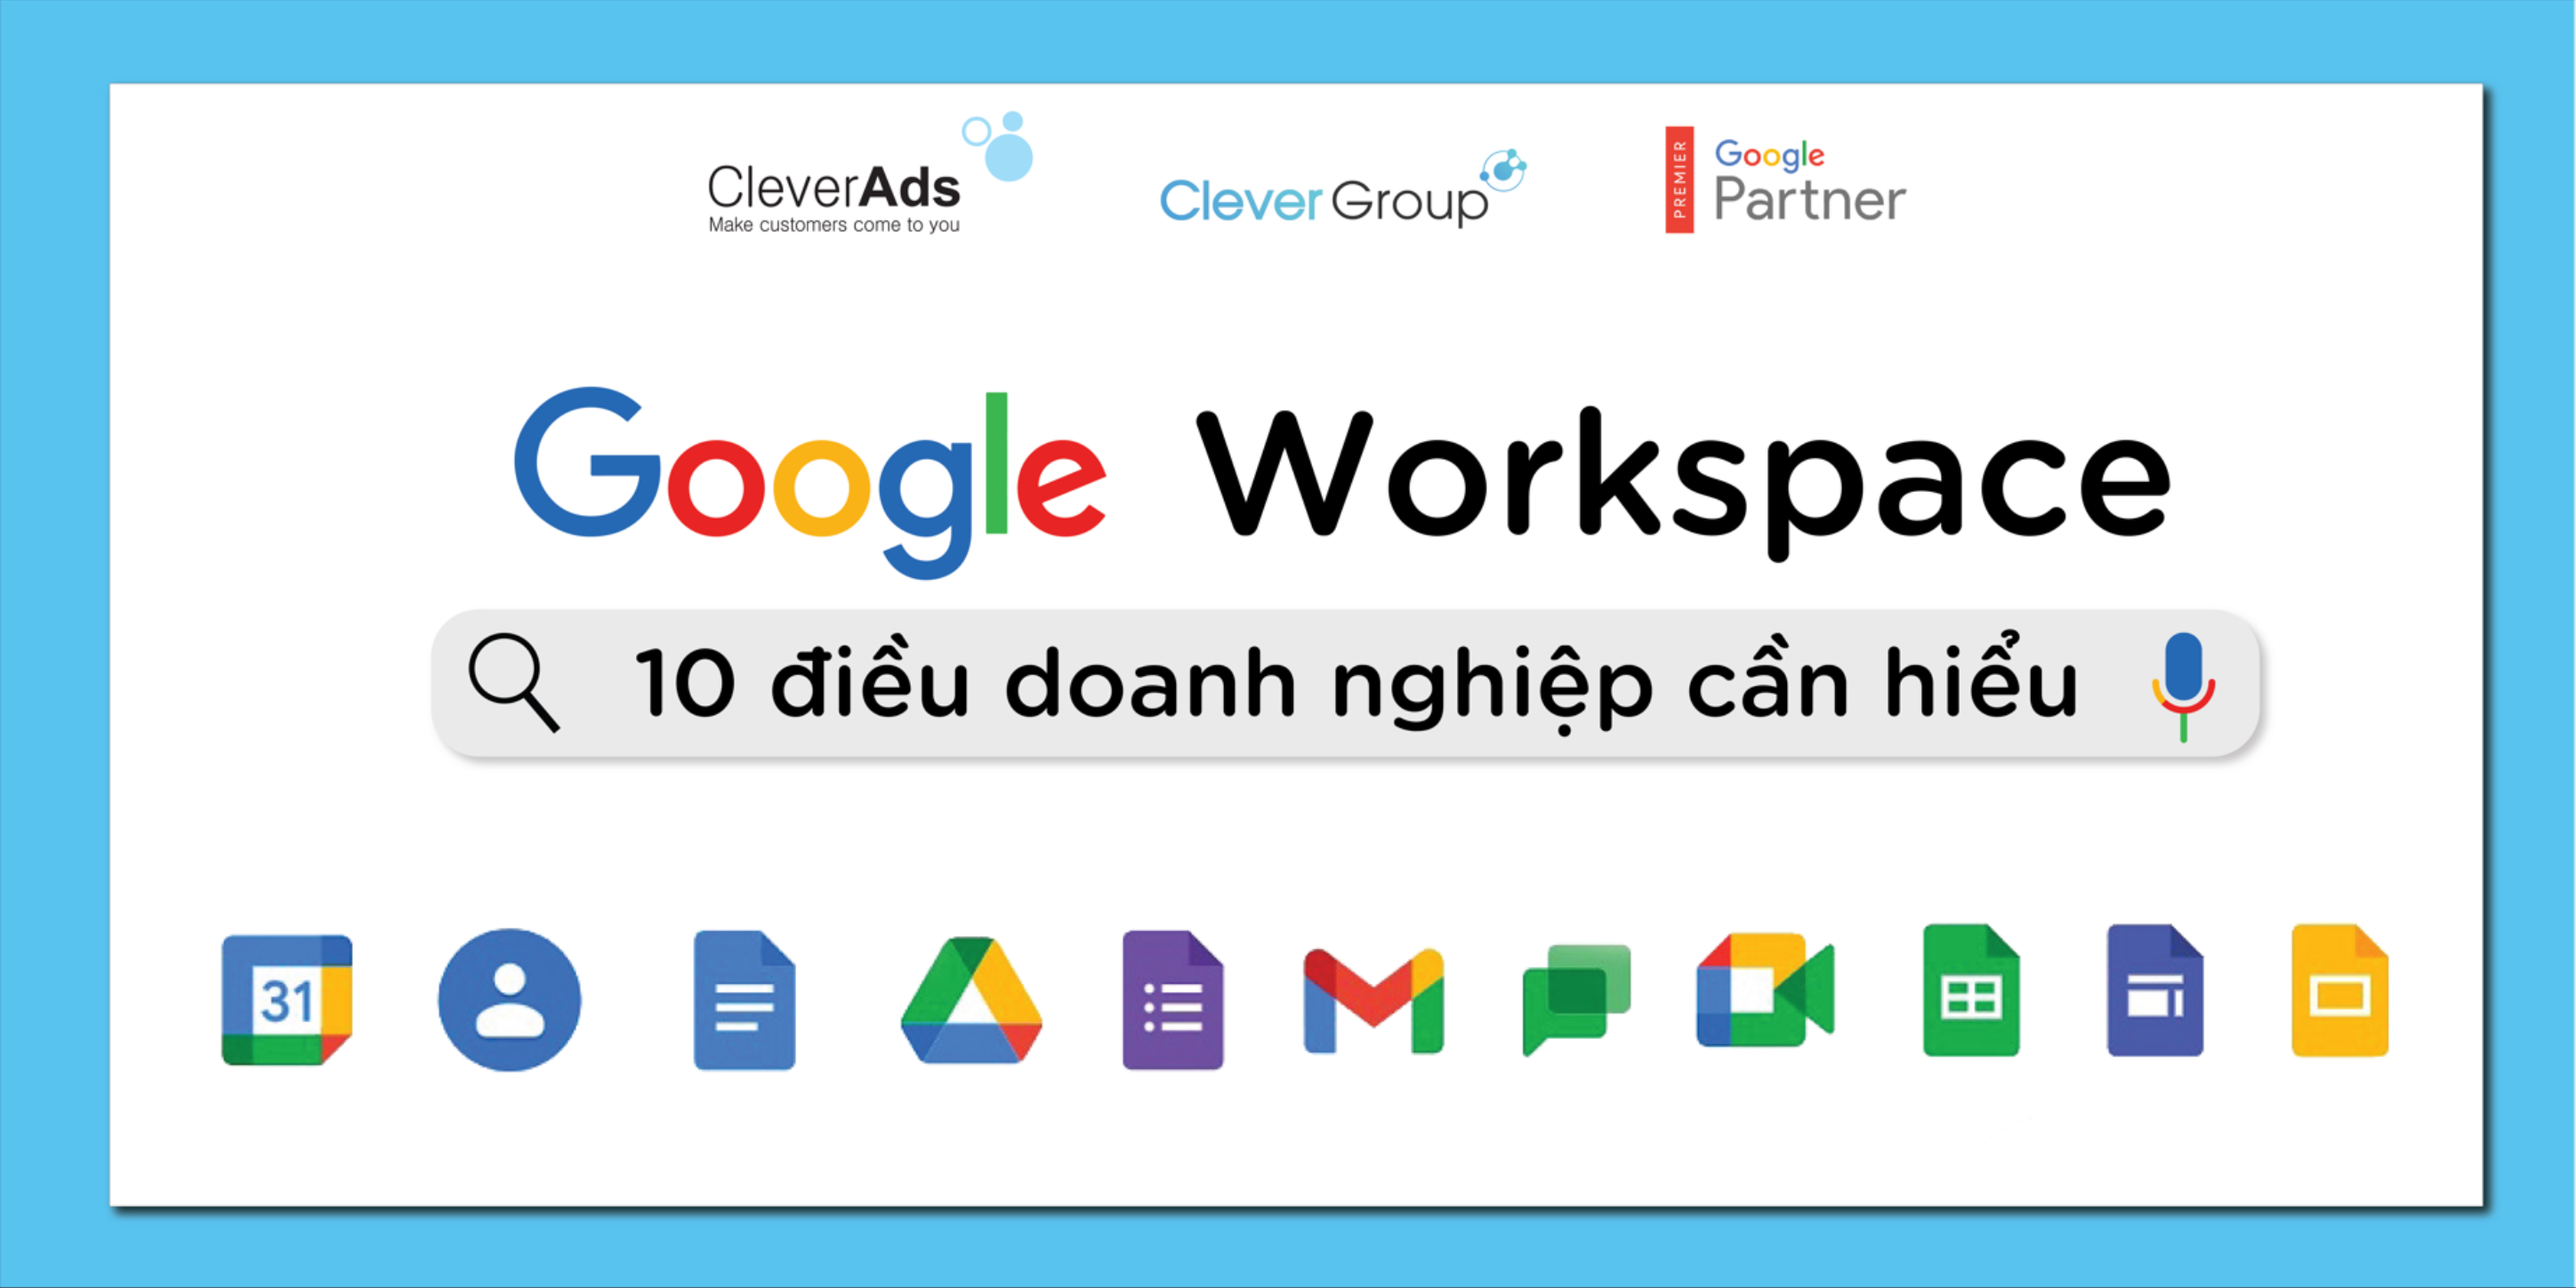 10 điều doanh nghiệp cần hiểu về Google Workspace